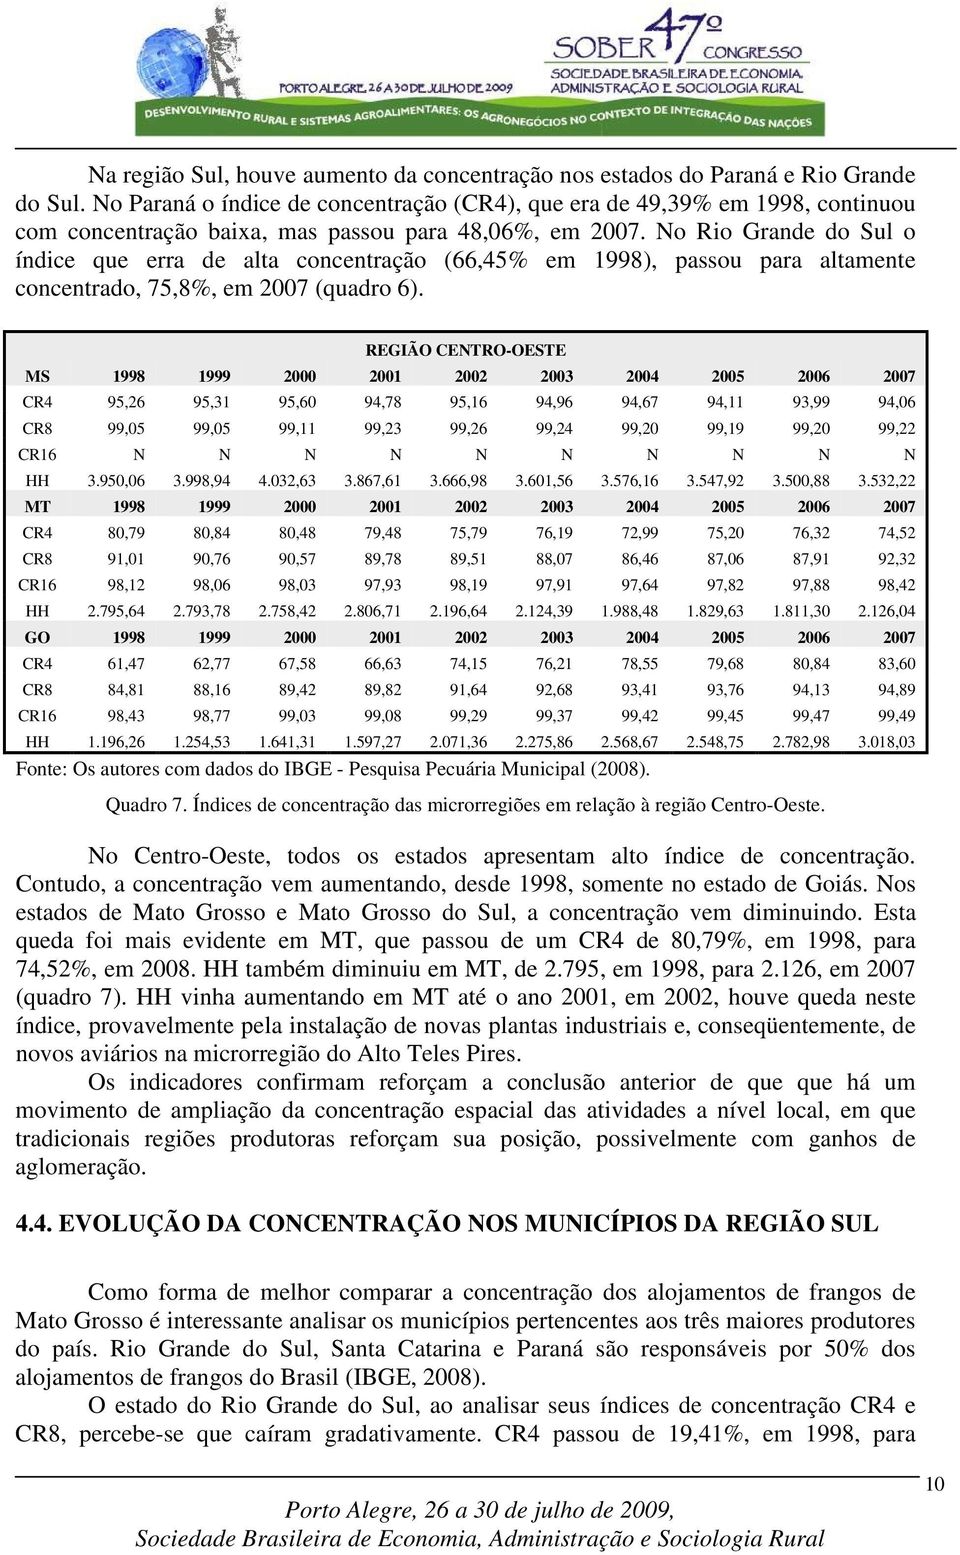 No Rio Grande do Sul o índice que erra de alta concentração (66,45% em 1998), passou para altamente concentrado, 75,8%, em 2007 (quadro 6).